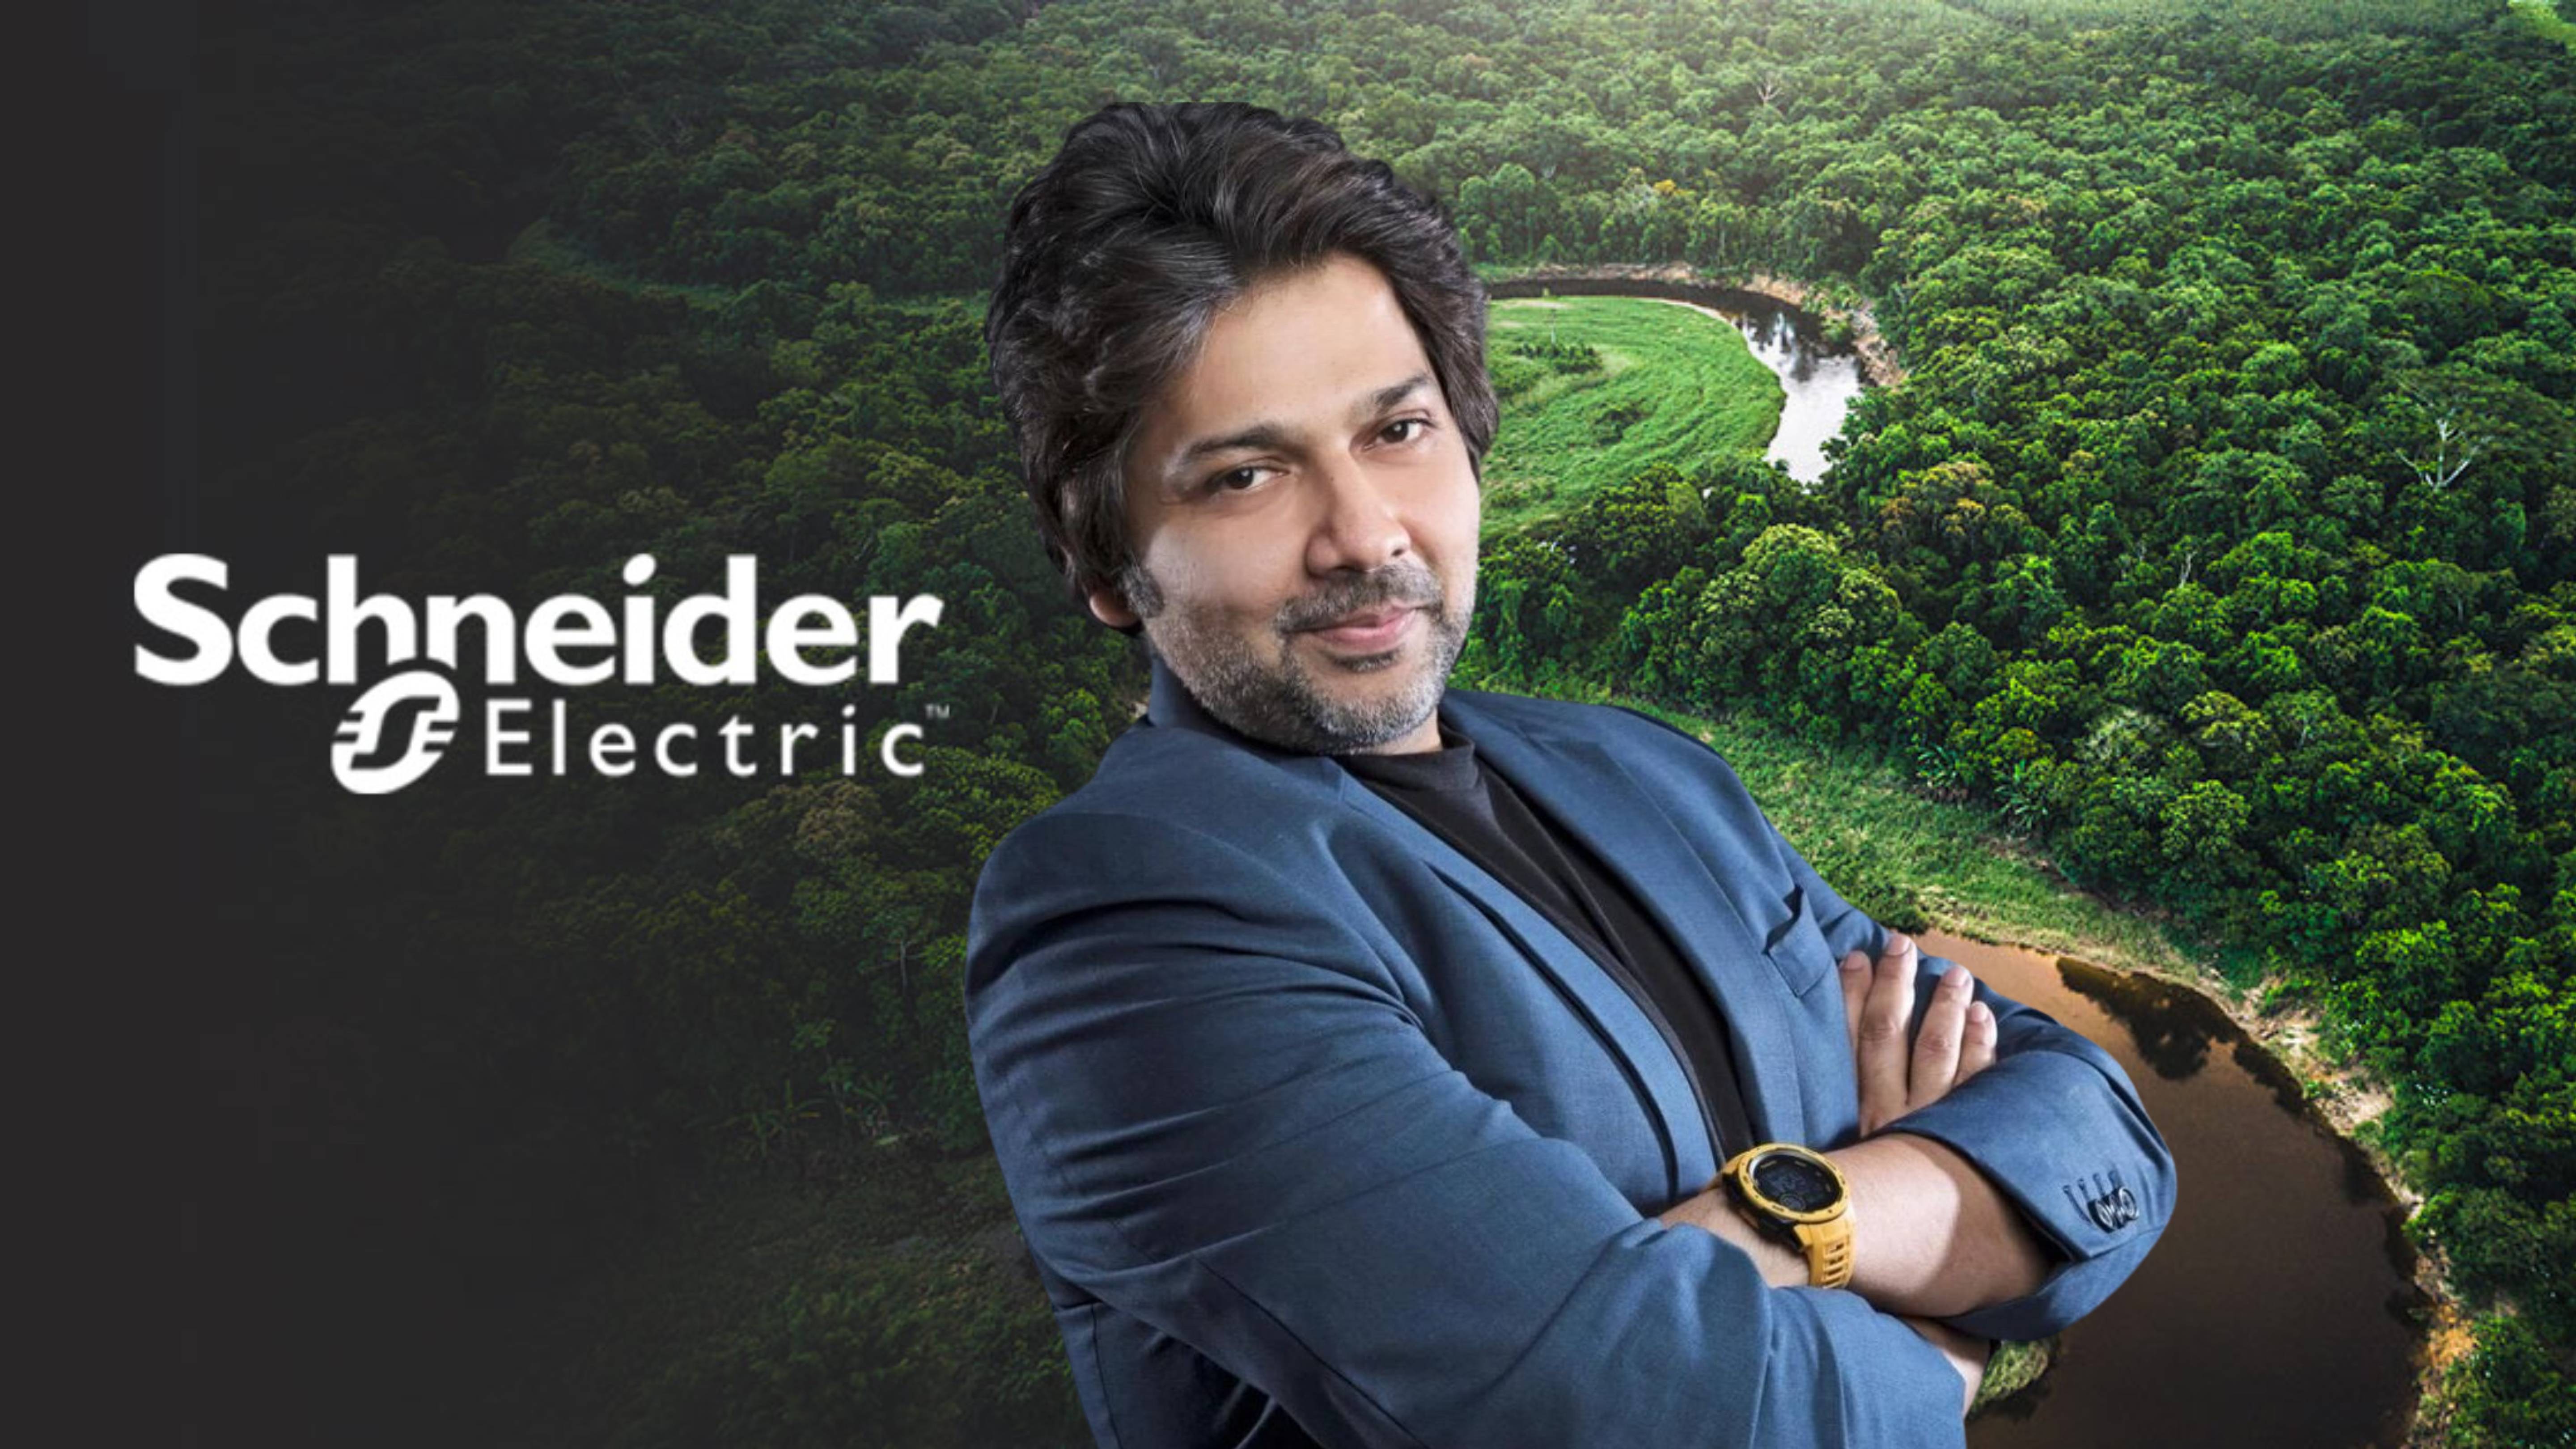 Schneider Electric nomeia Farrukh Shad como Chefe de Sustentabilidade para a região APMEA